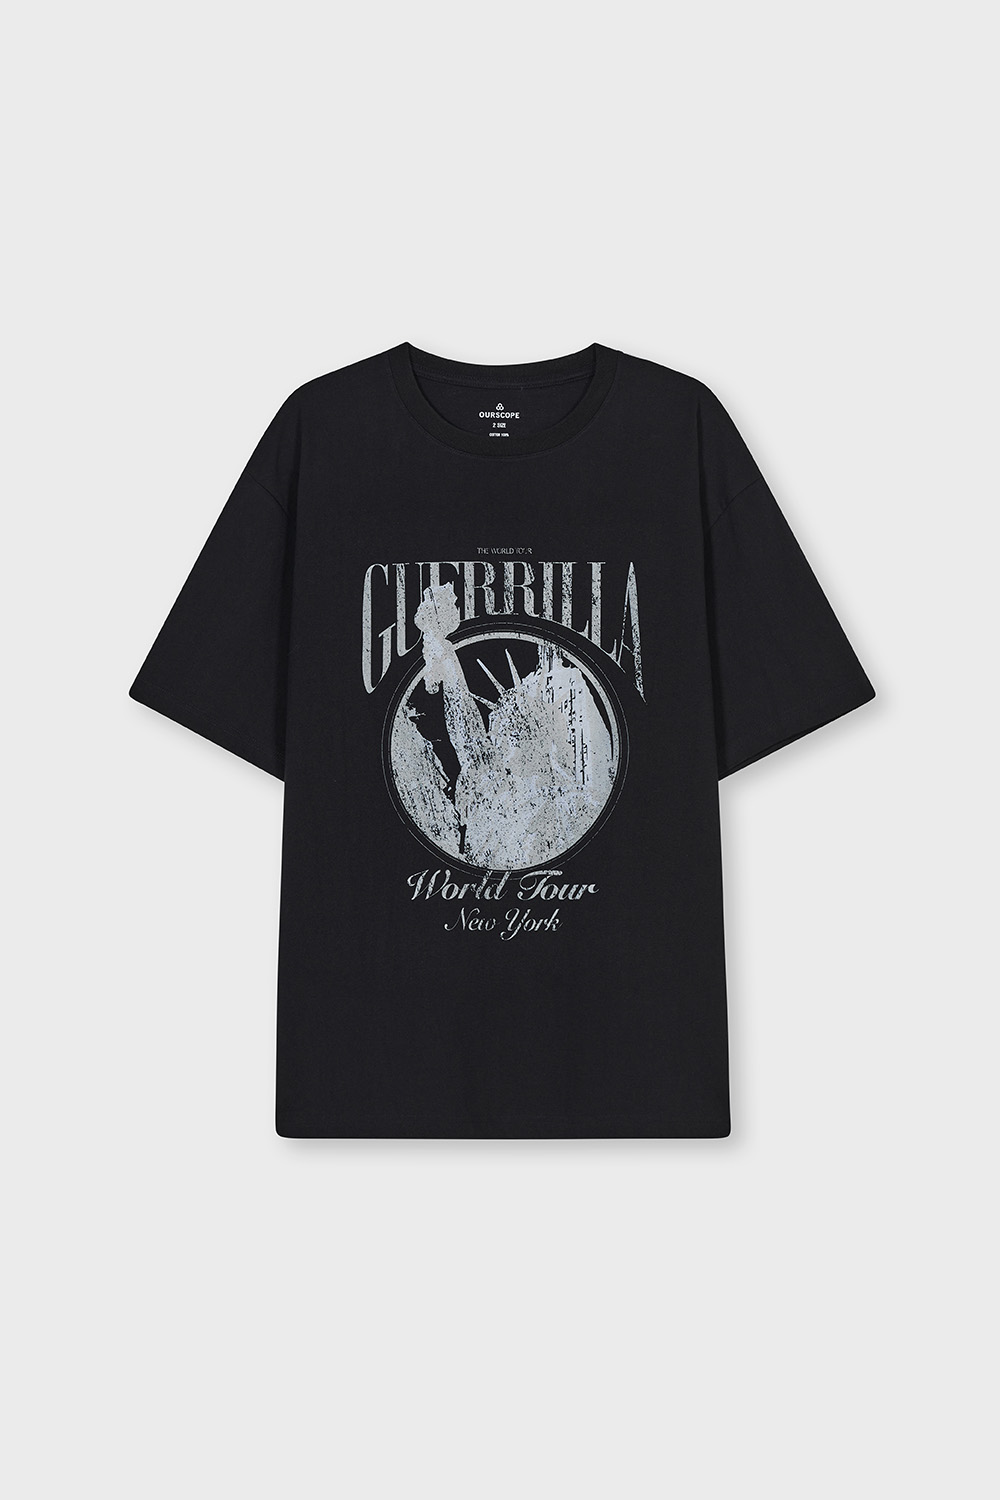 Guerrilla T-Shirts (Black)